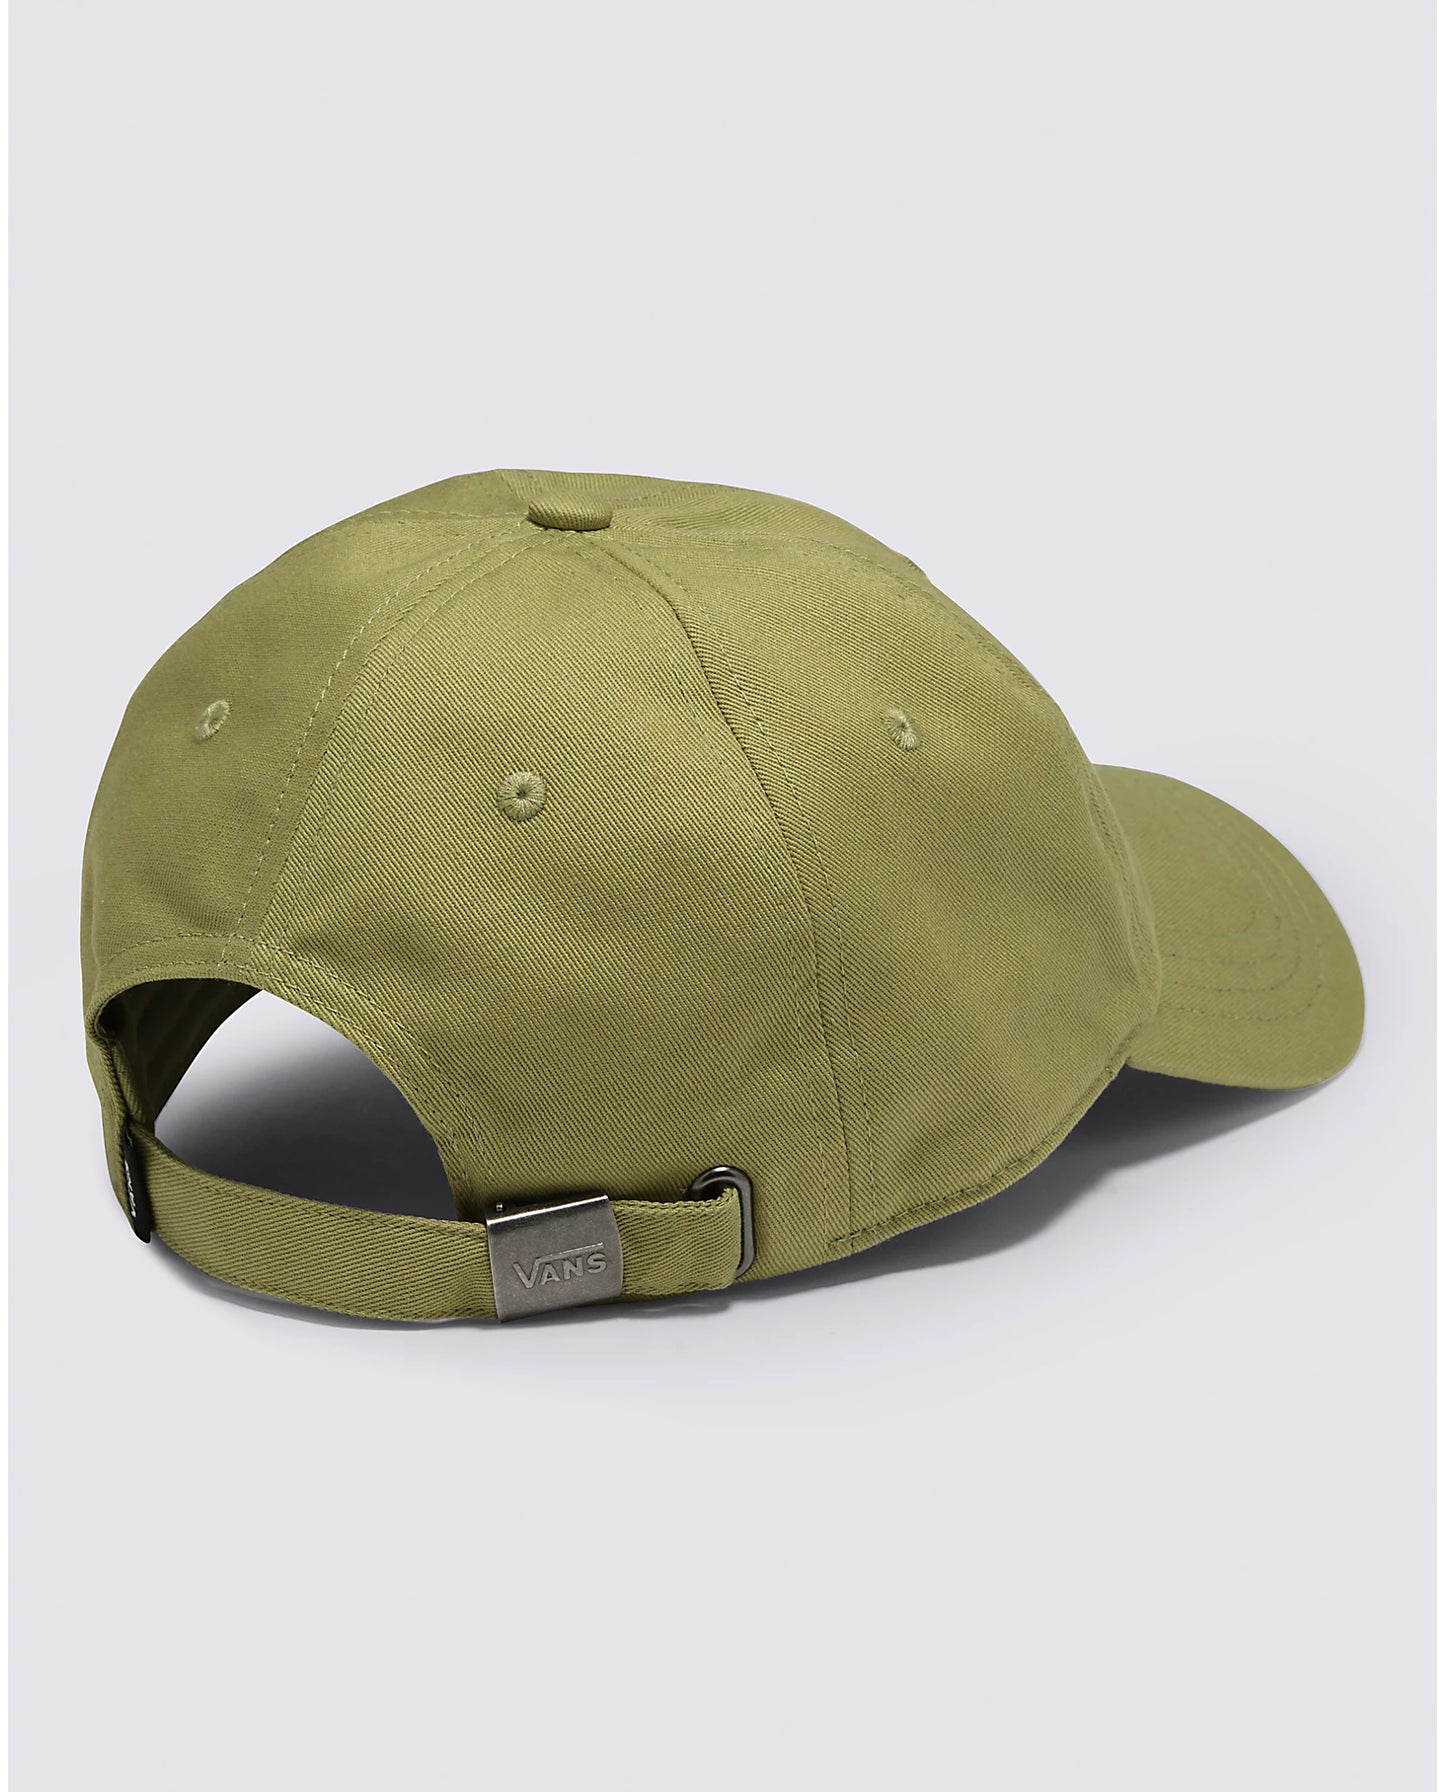 Vans Court Side Hat - Green Olive